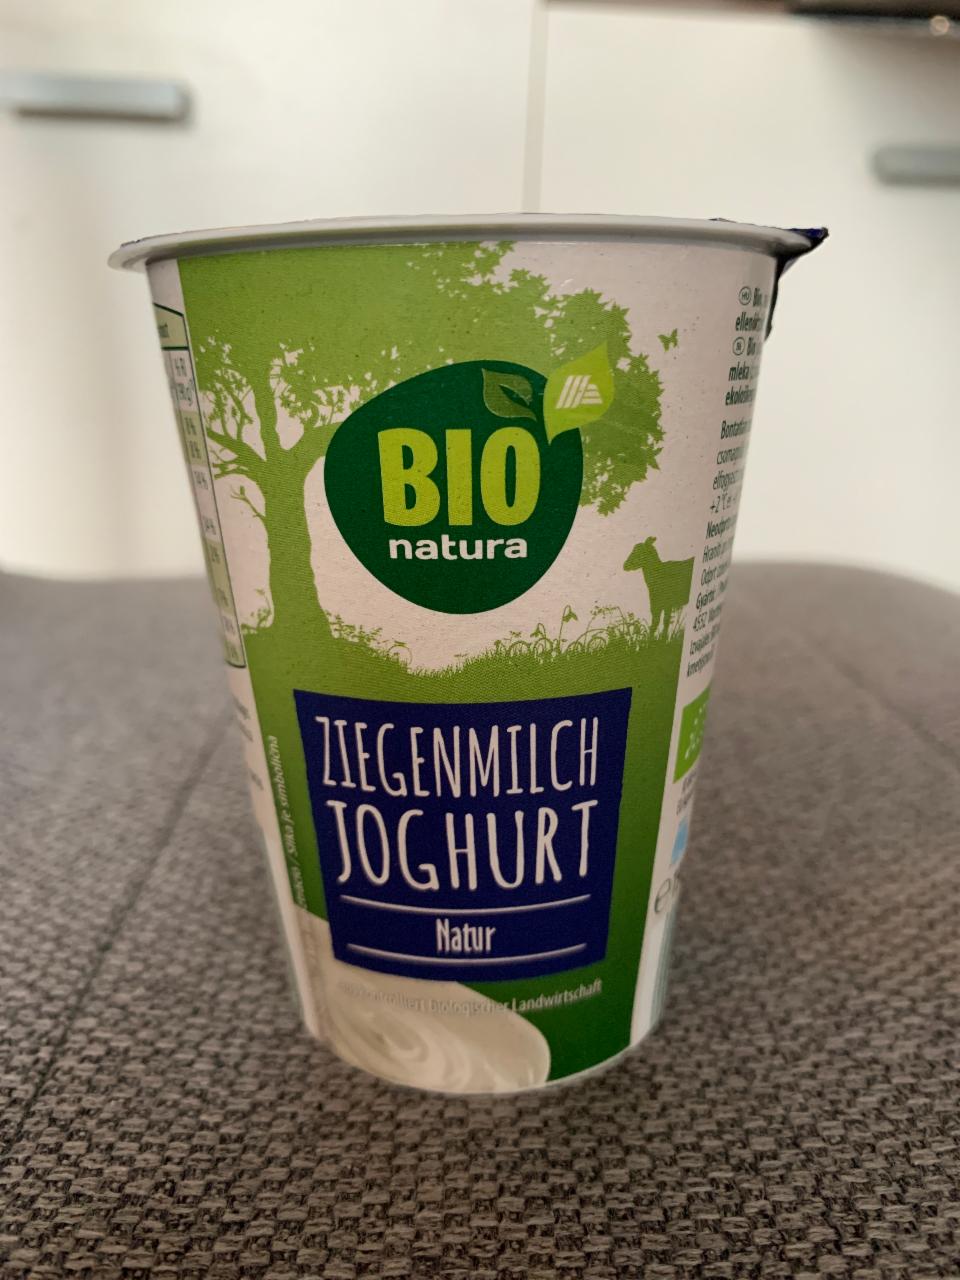 Fotografie - Ziegenmilch Joghurt Natur Bio natura